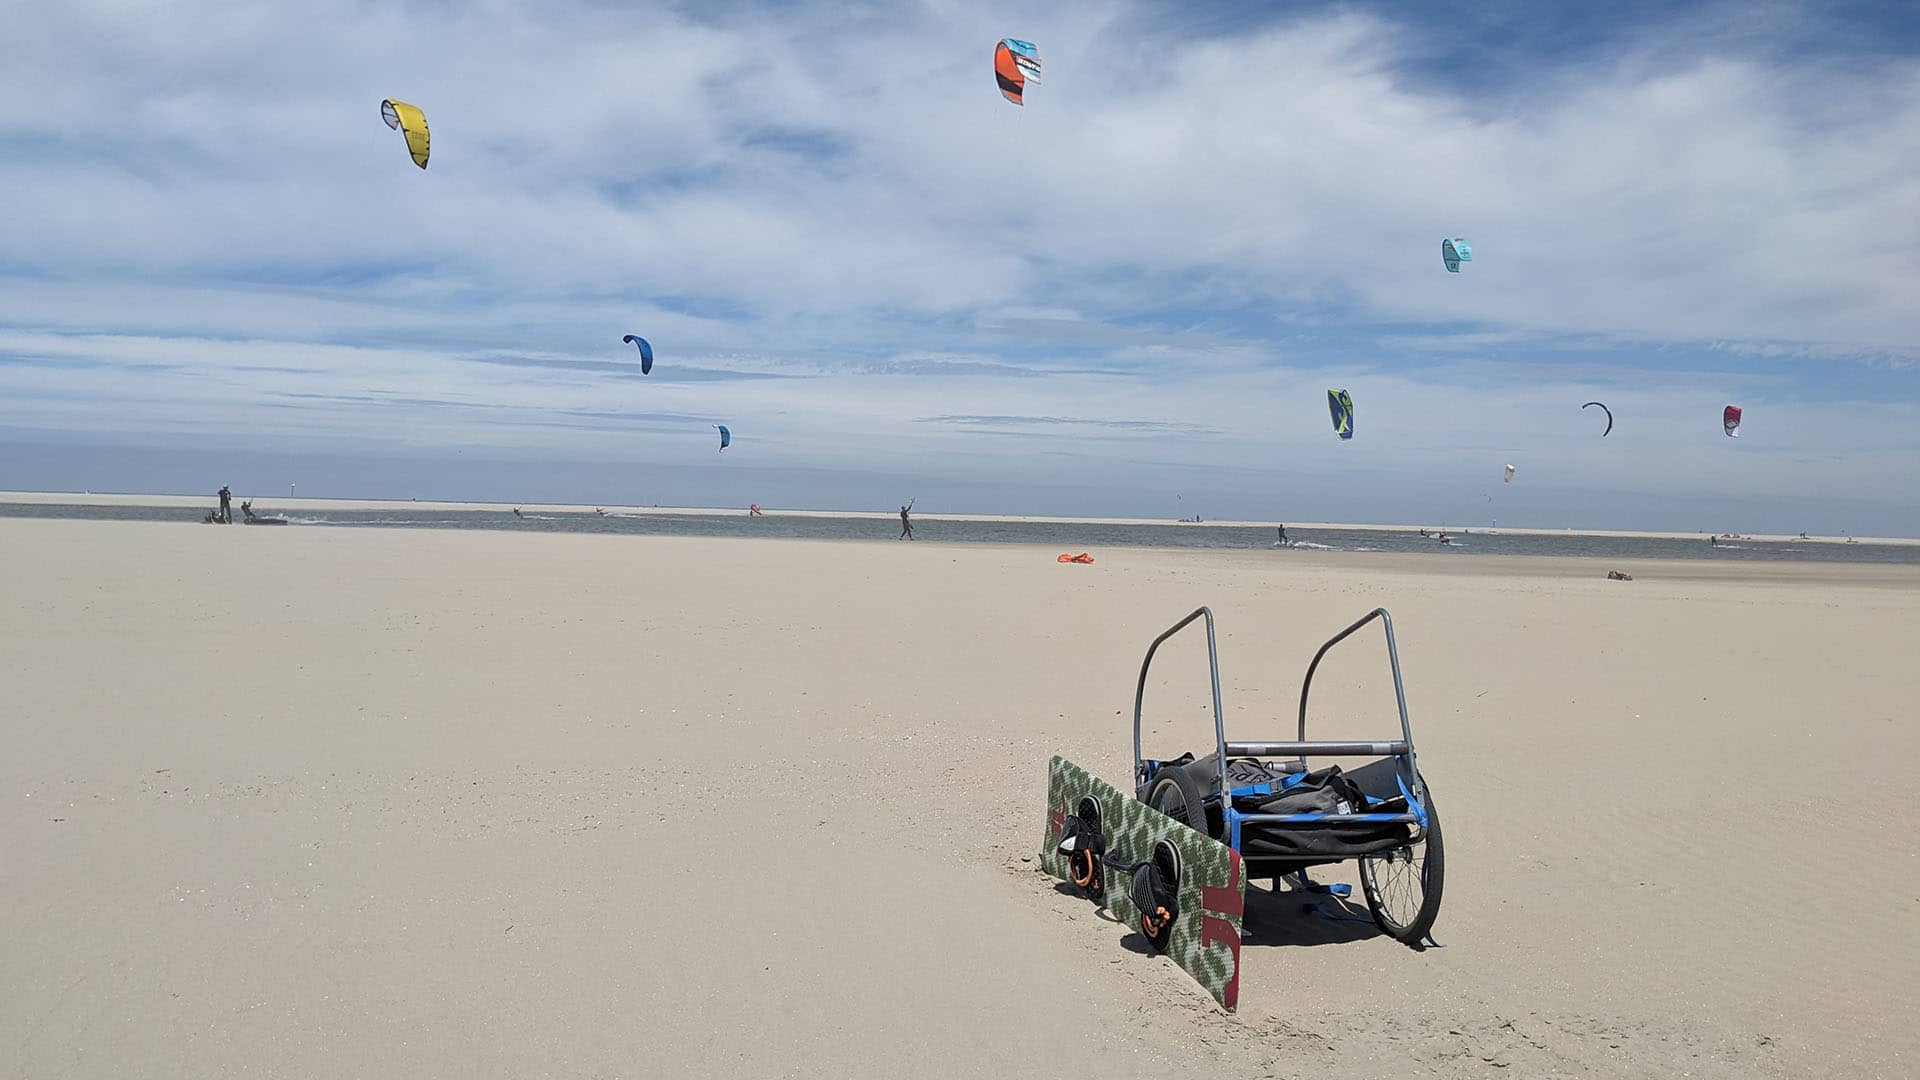 kar met kitesurfspullen op de Zandmotor in het Westland op een zonnige zomerse dag met in de achtergrond kites die aan het varen zijn